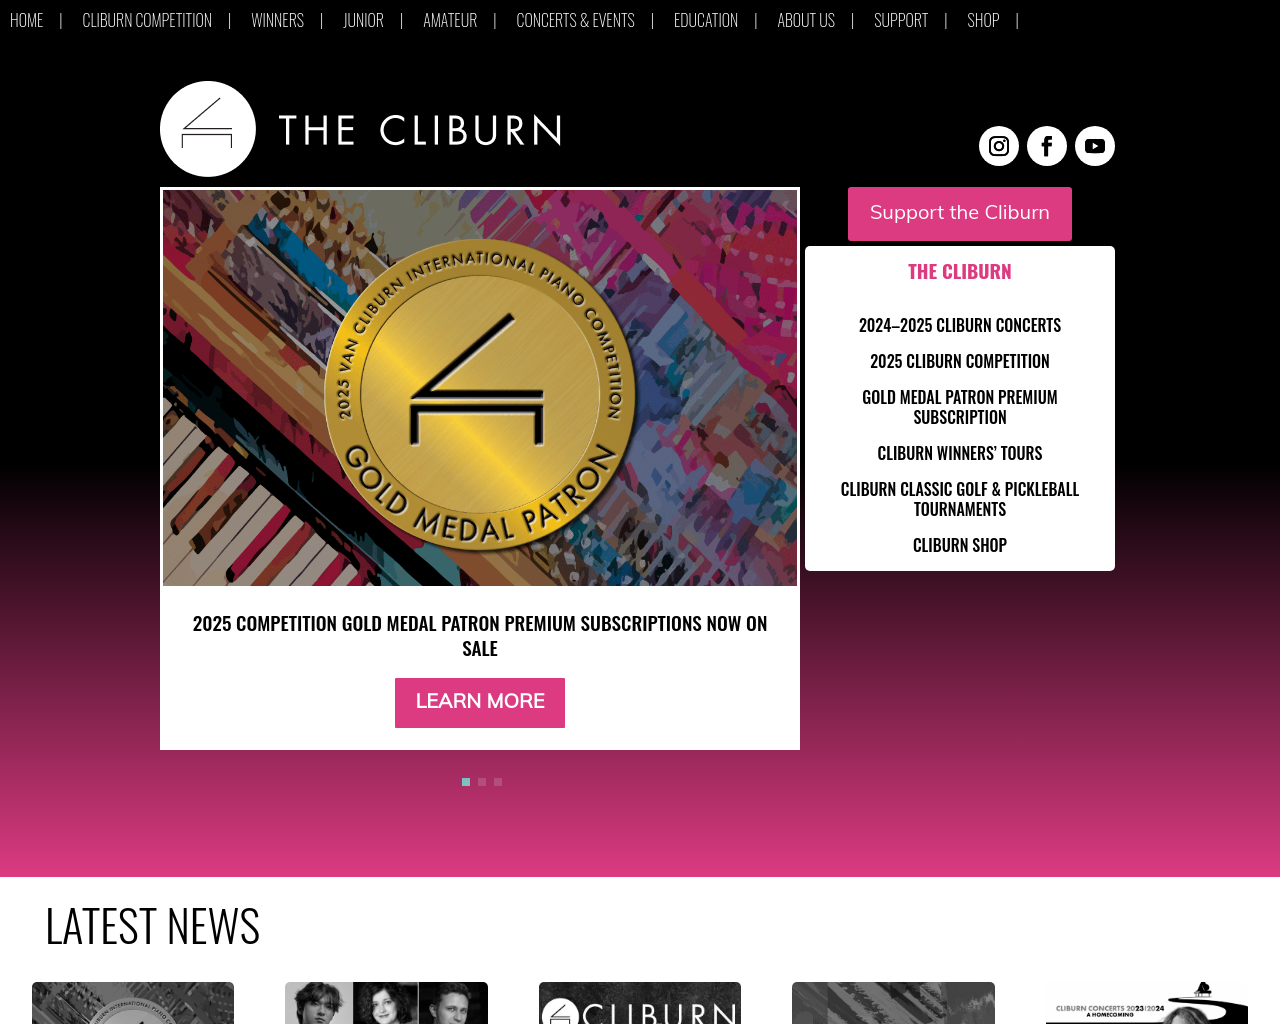 cliburn.org